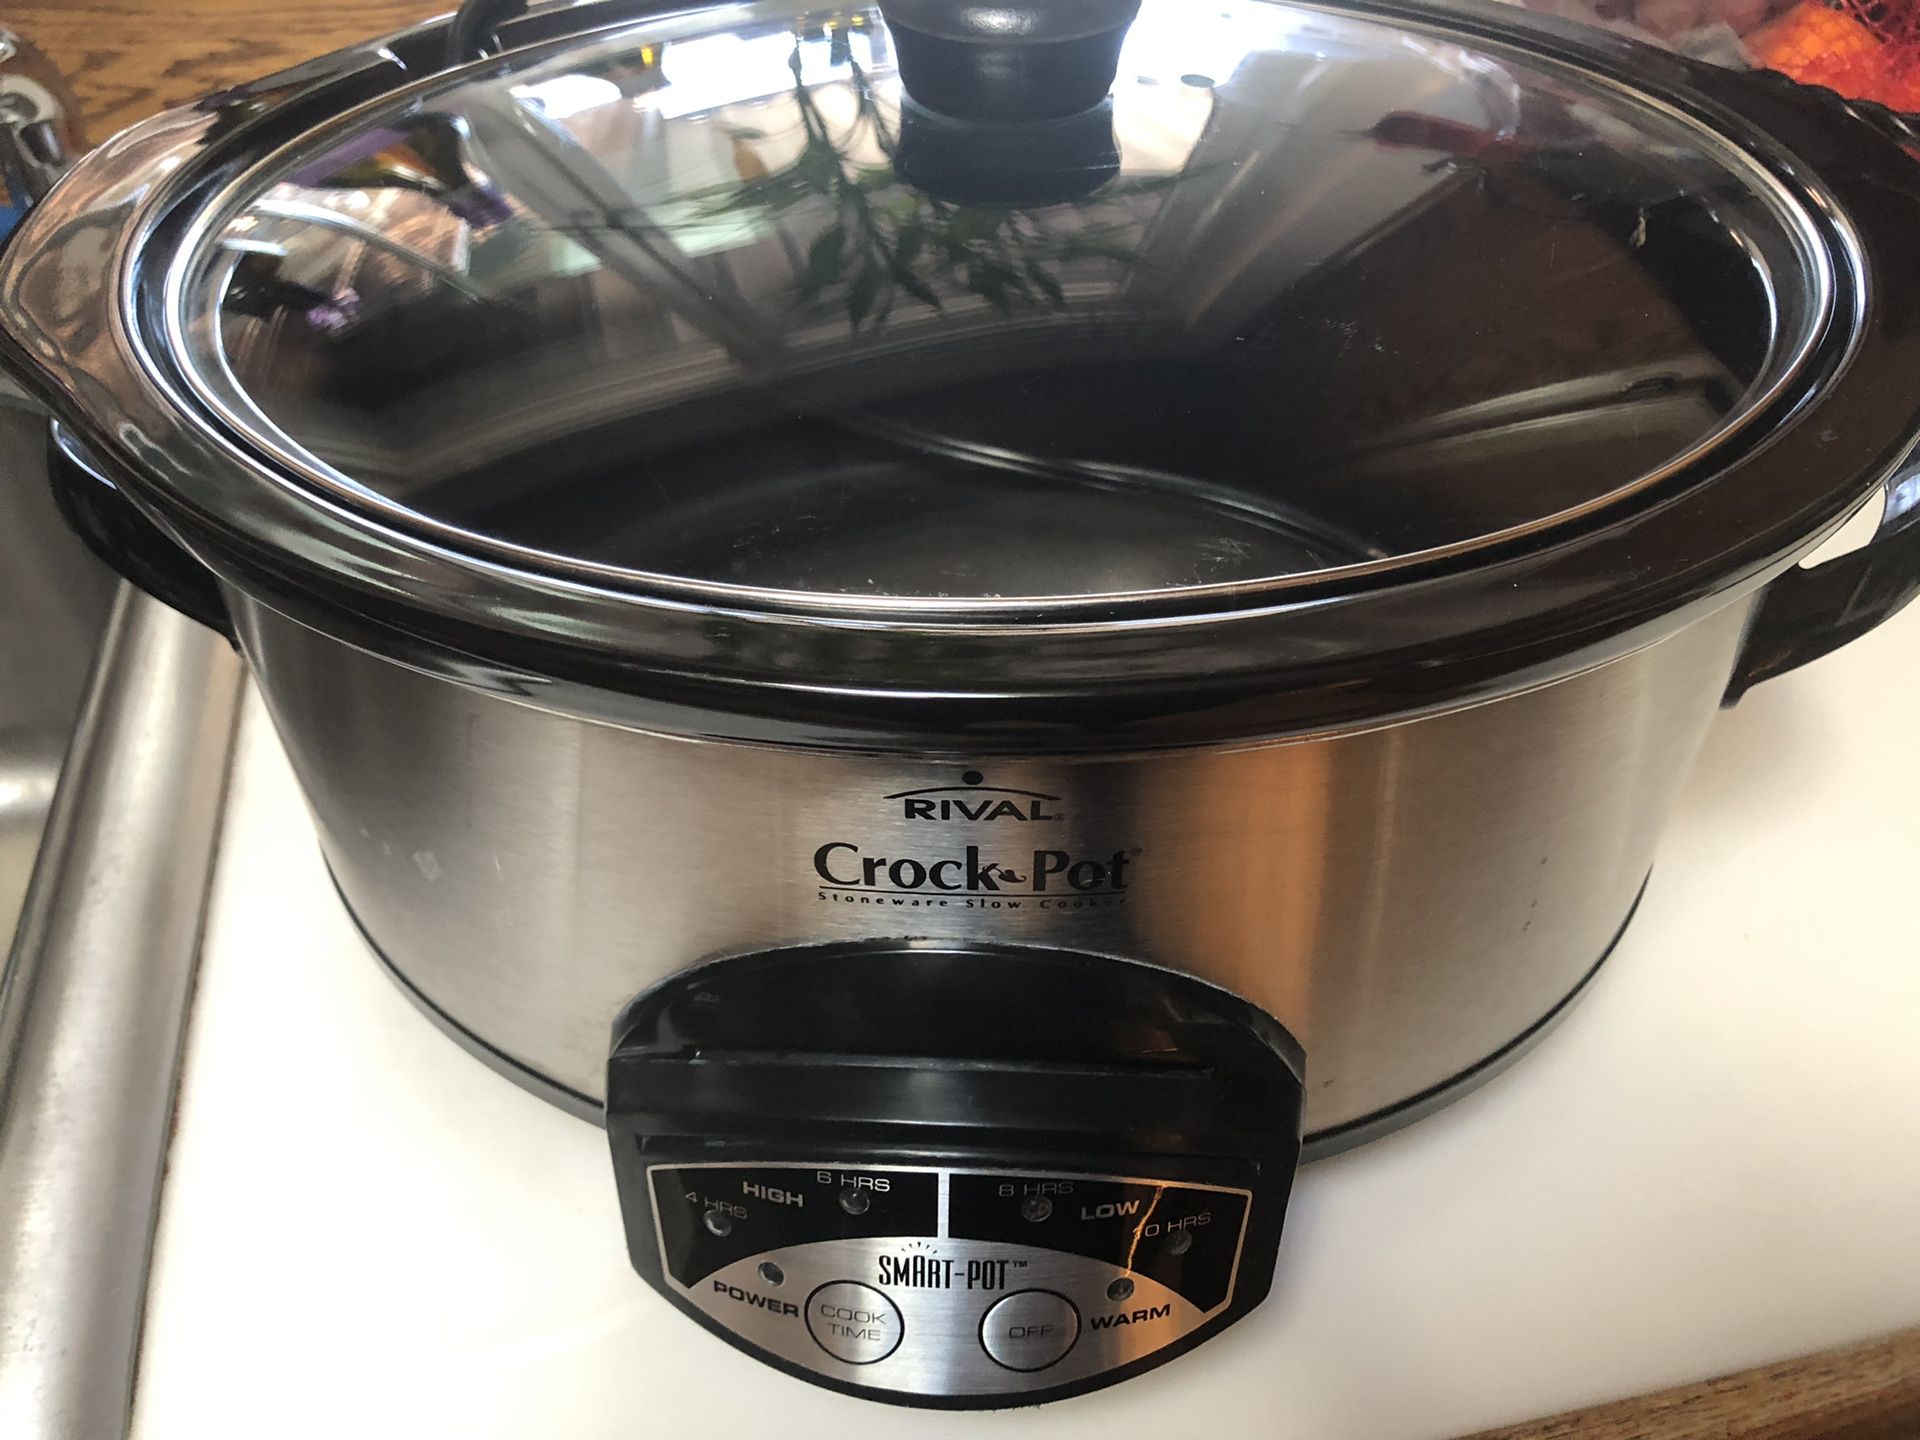 Rival Smart Pot Crock Pot - 4 Quart